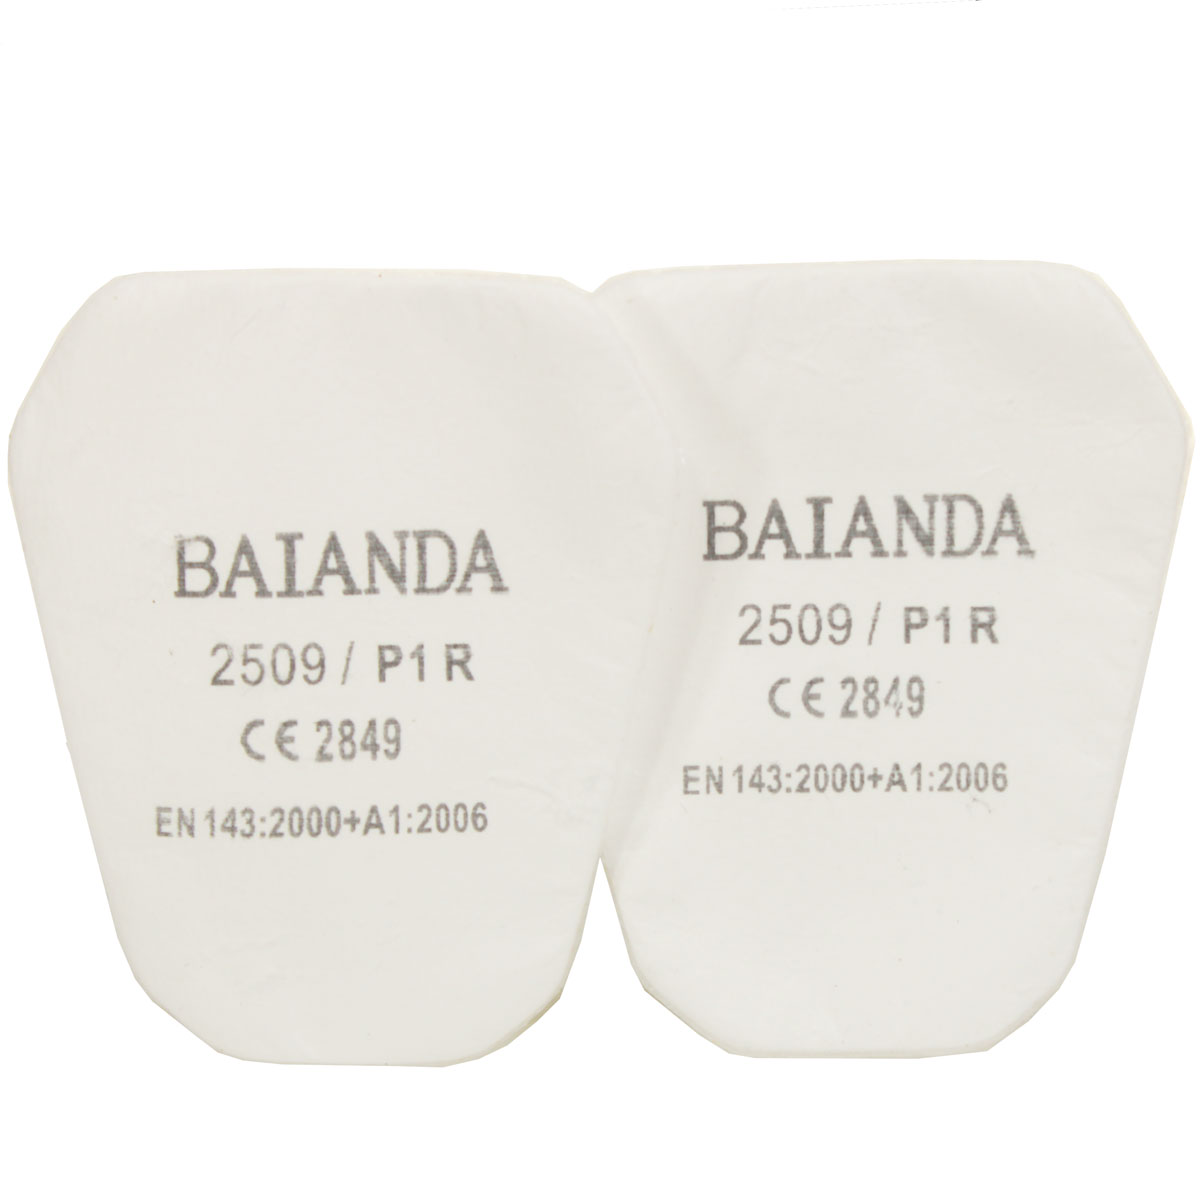 Комплект противоаэрозольных фильтров (предфильтров) BAIANDA 2509, класс P1R, 10 шт/уп фильтр для защиты от твердых и жидких частиц органические пары baianda 1203 класс p3r